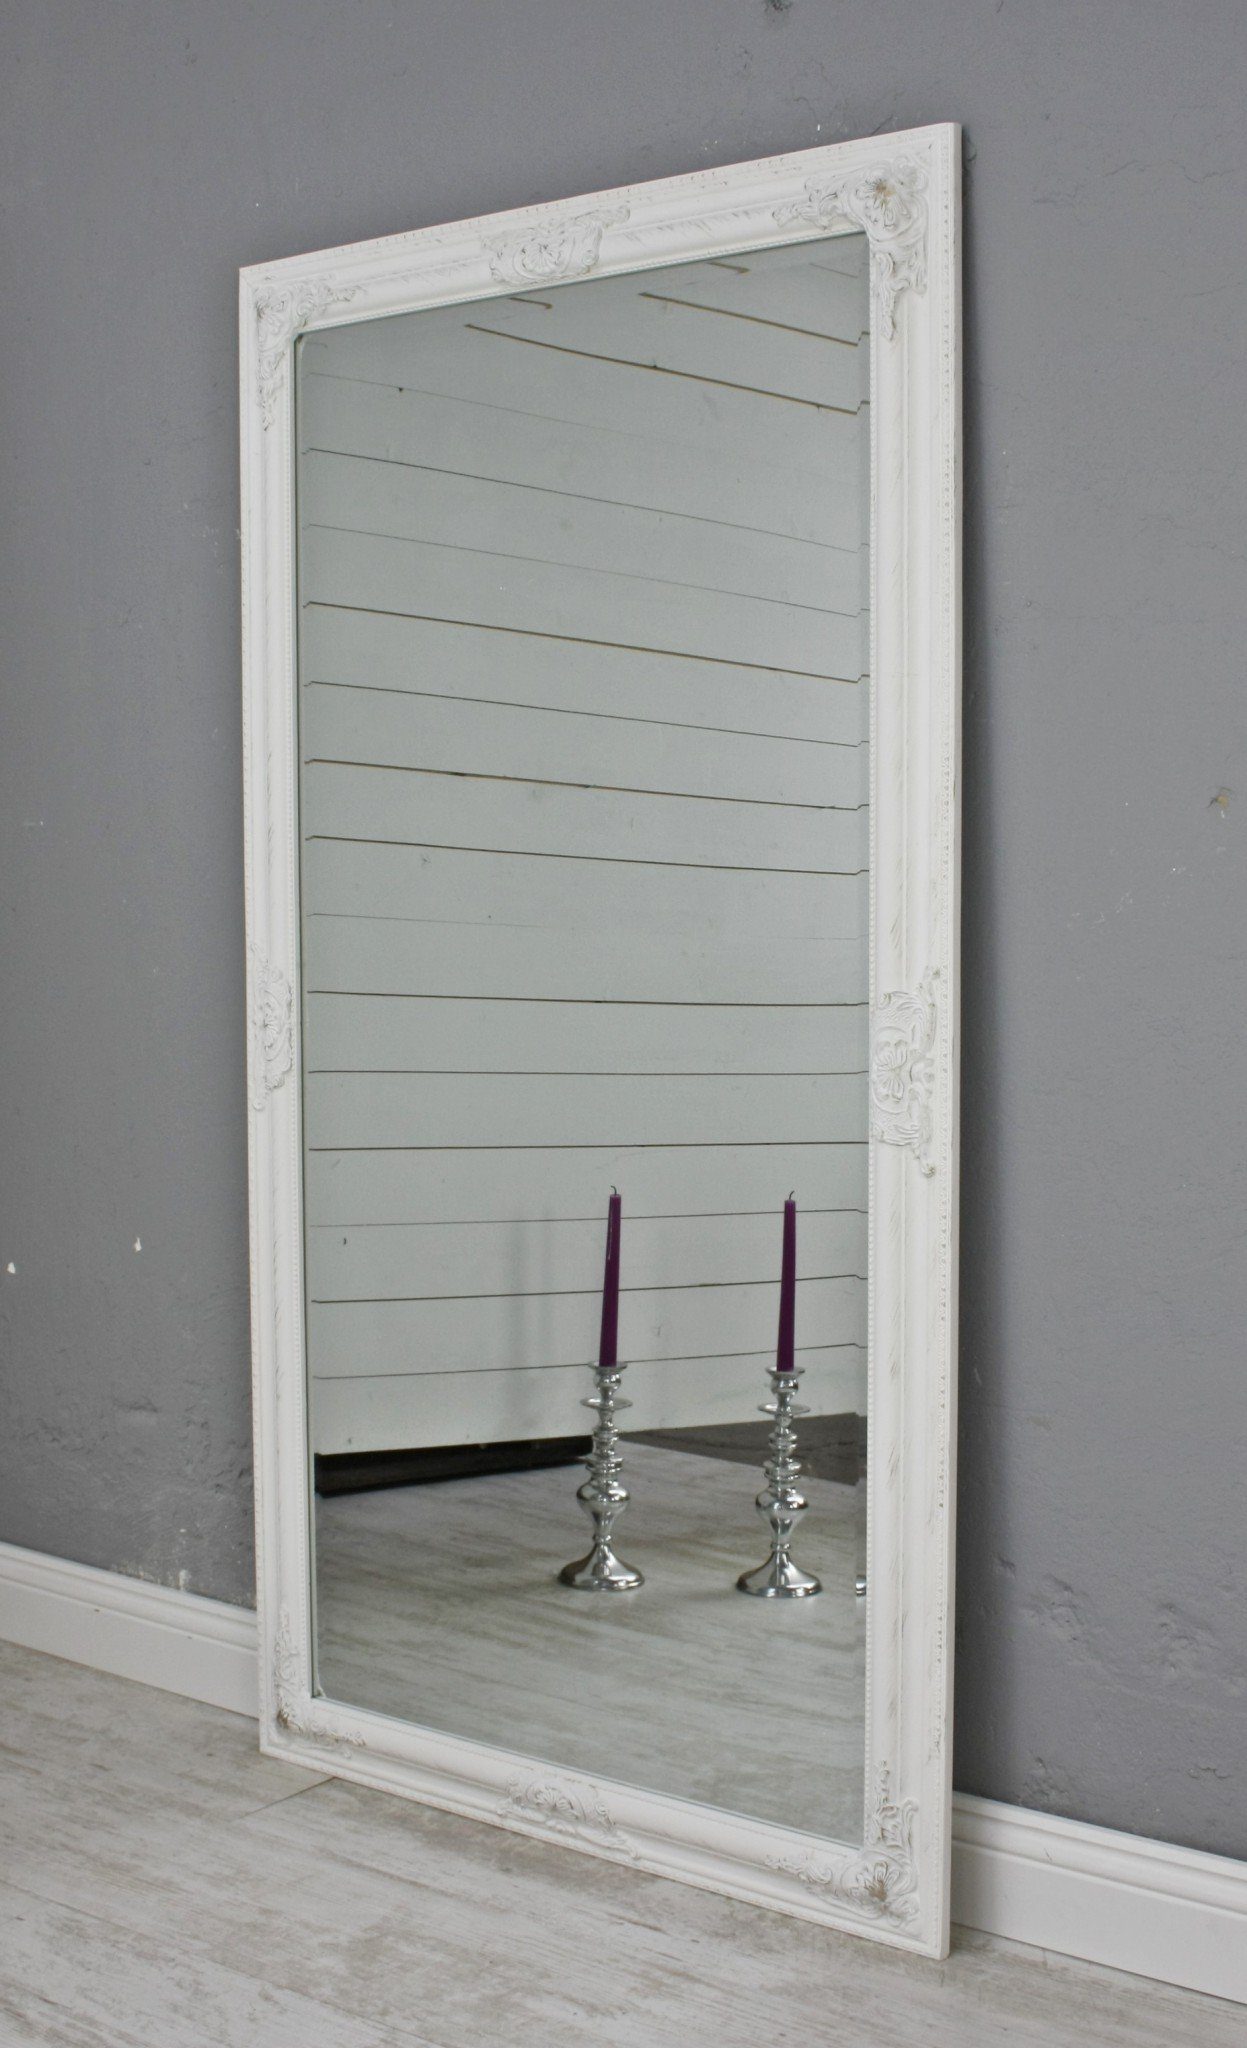 Vintage weiß cm 132x72x7 Spiegel Wandspiegel Spiegel: 132cm weiß barock Look Holz, Wandspiegel elbmöbel